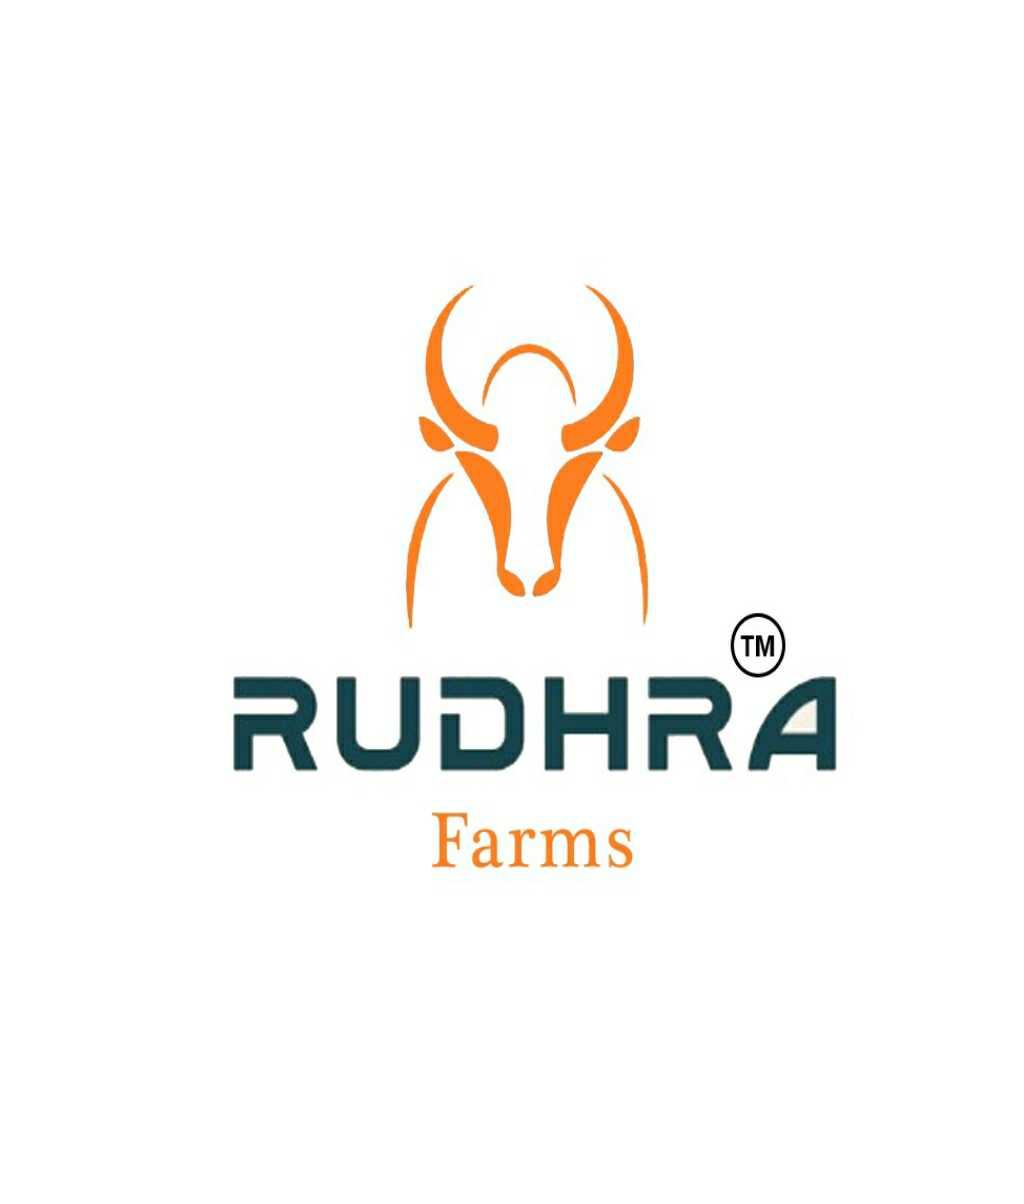 RUDHRA FARMS